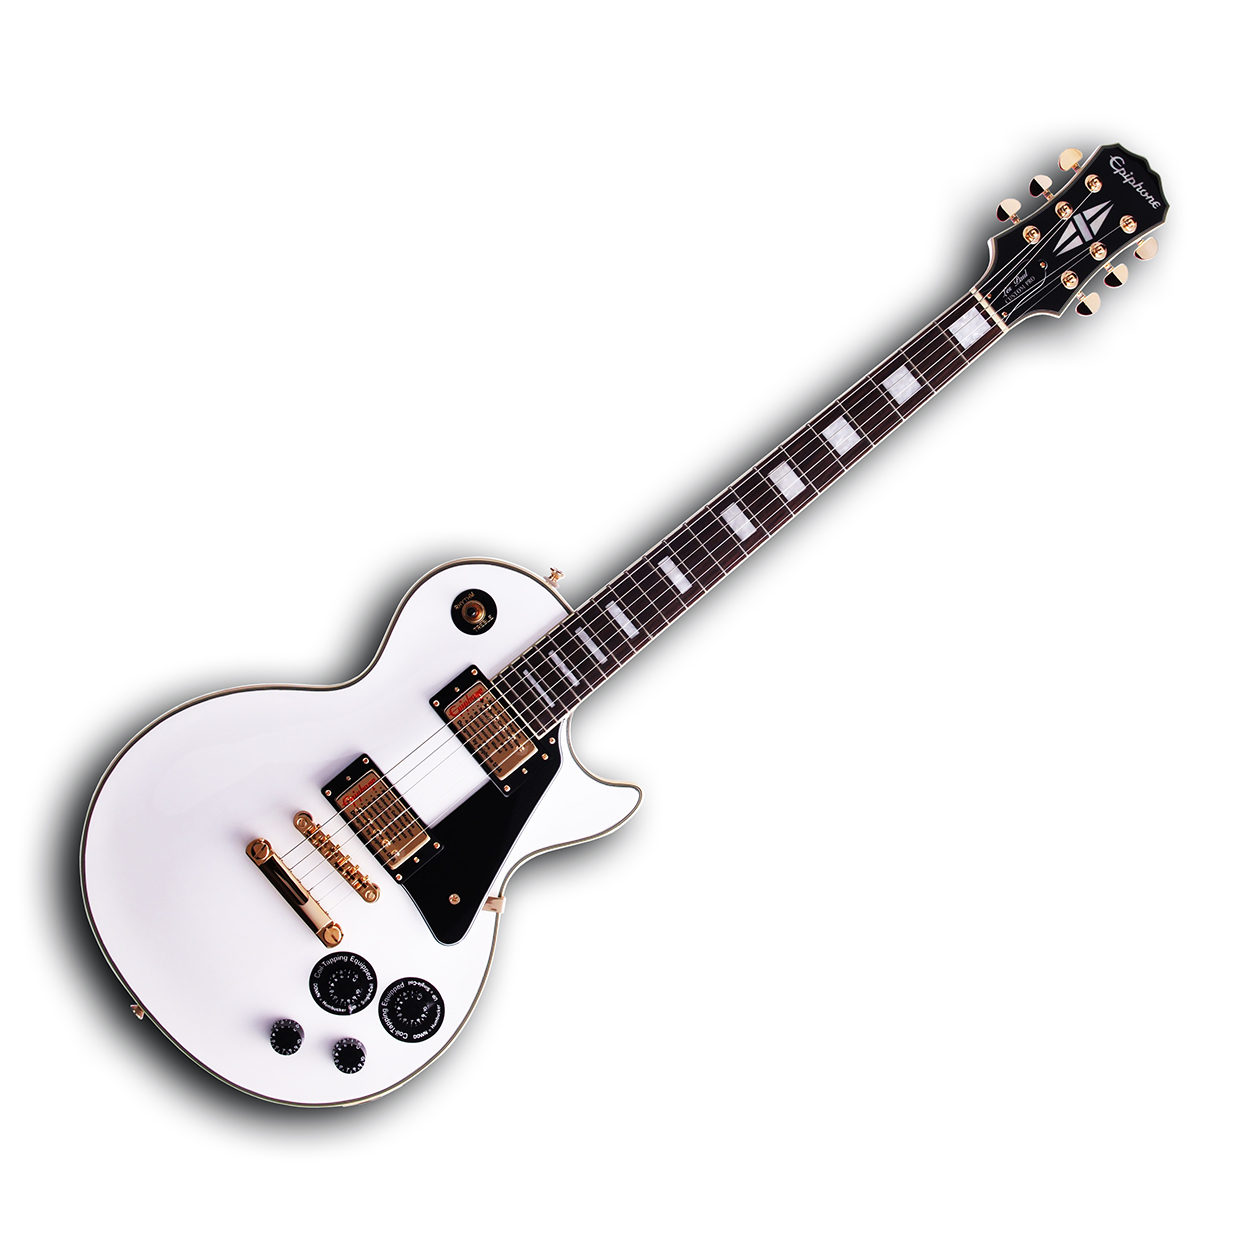 EPIPHONE レスポール custom Pro カスタムプロ ホワイト 白 - ギター